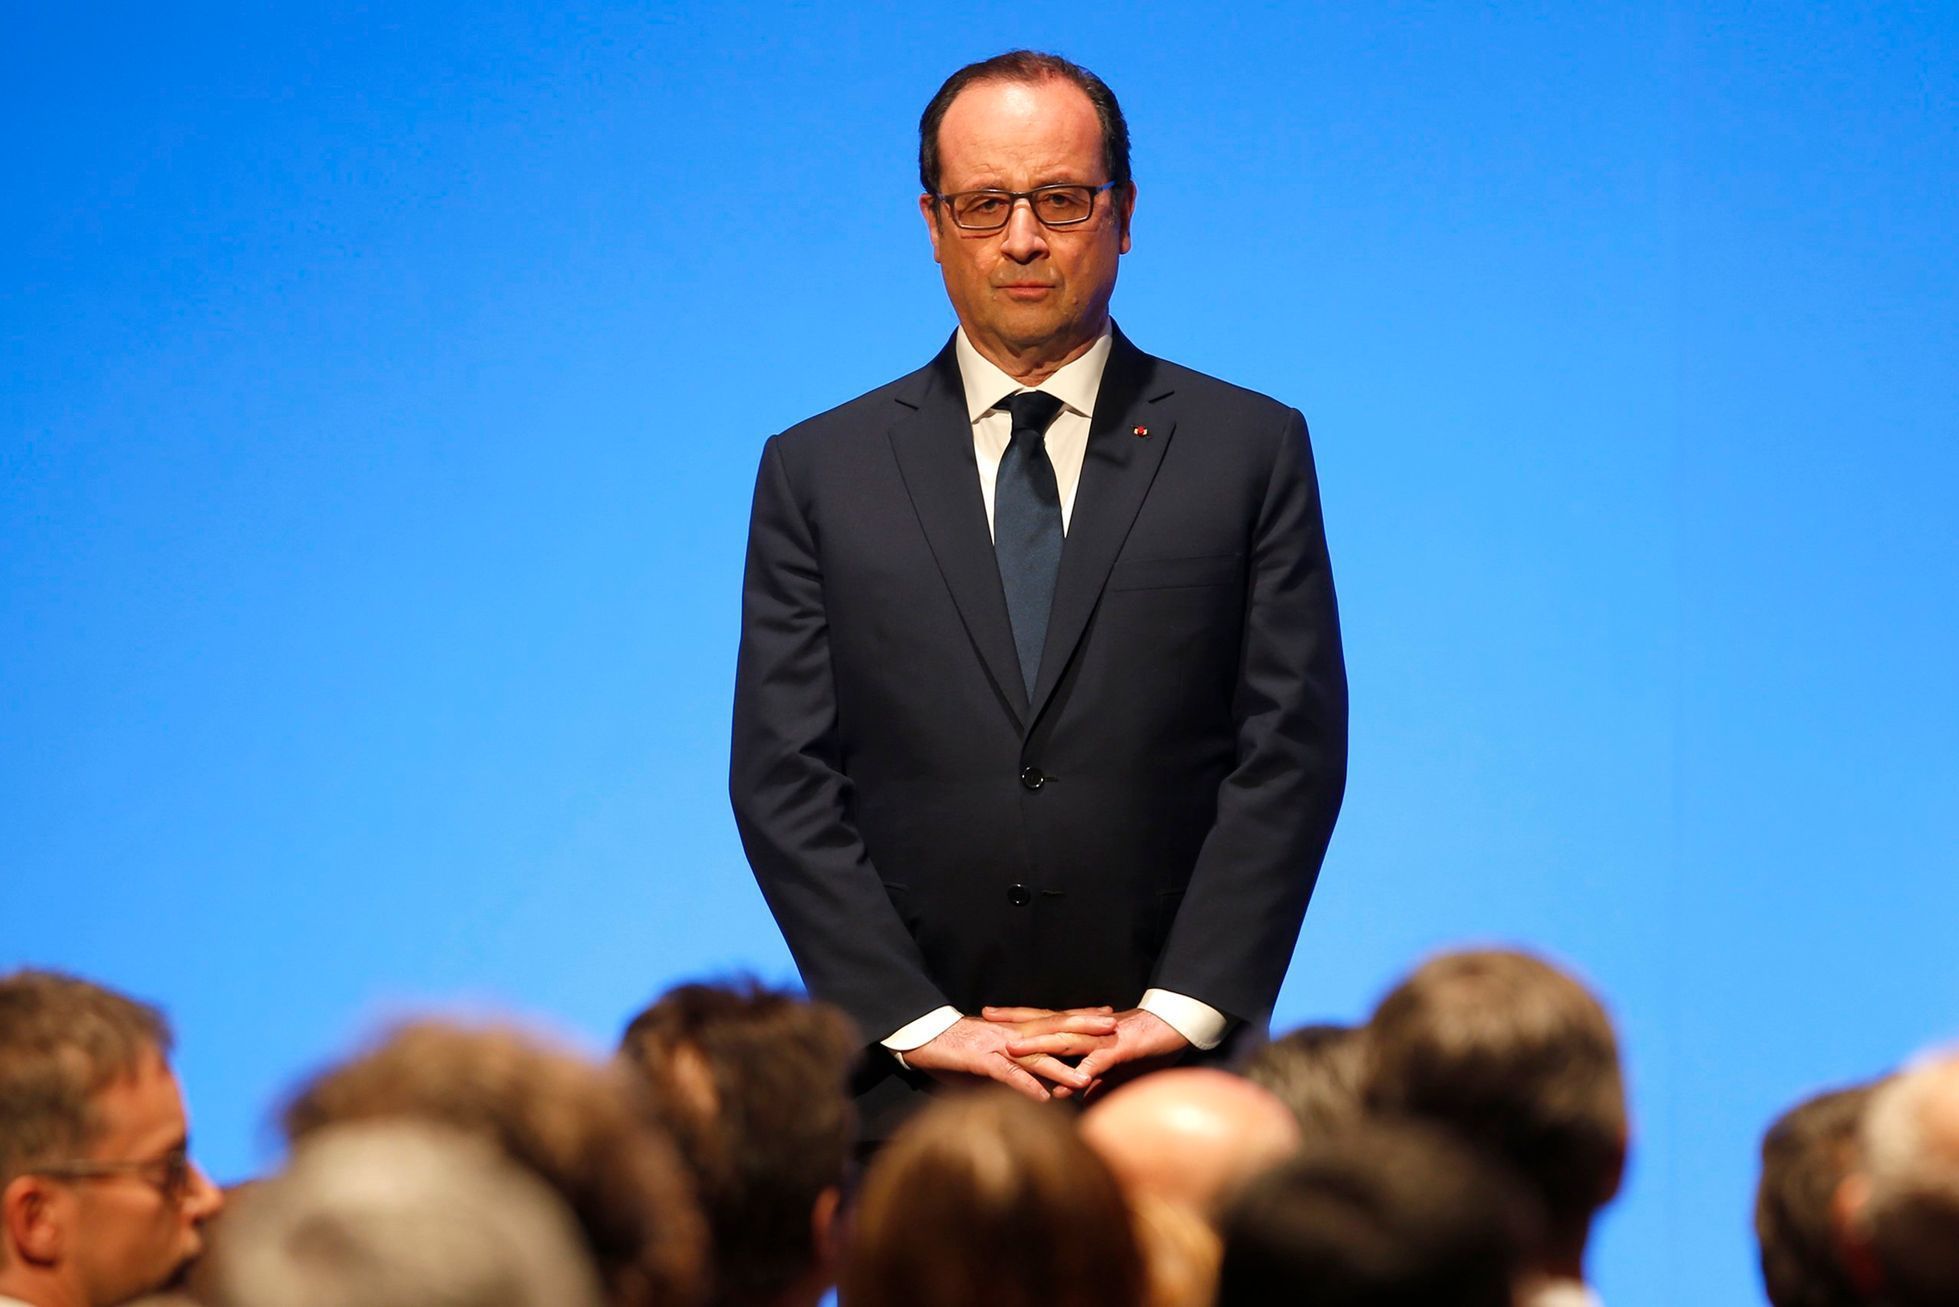 Francouzský prezident Francois Hollande během projevu k muslimům.